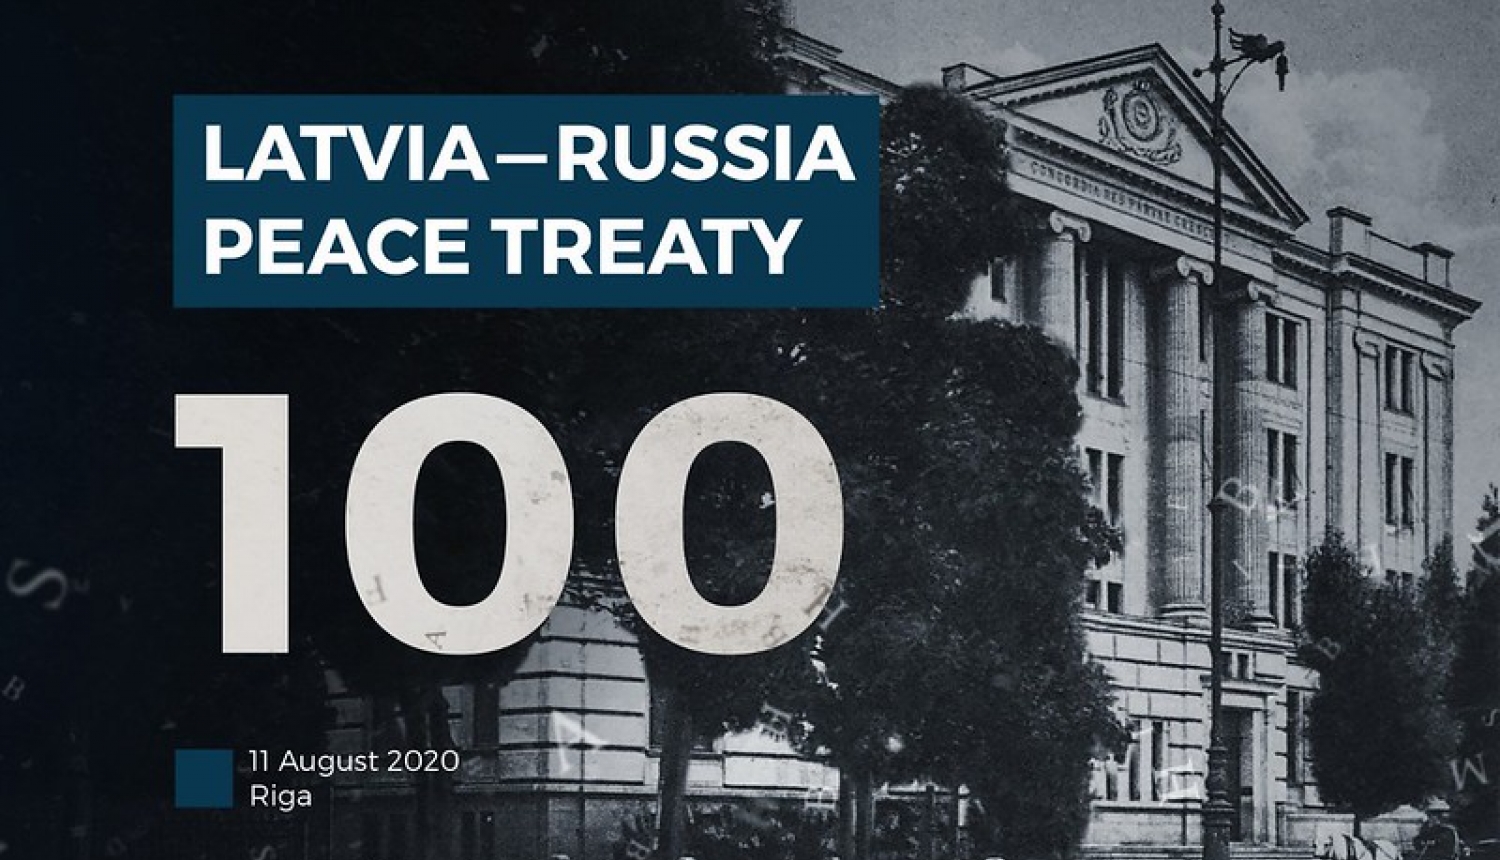 The centenary of signing the Latvia-Russia Peace Treaty marked in Riga